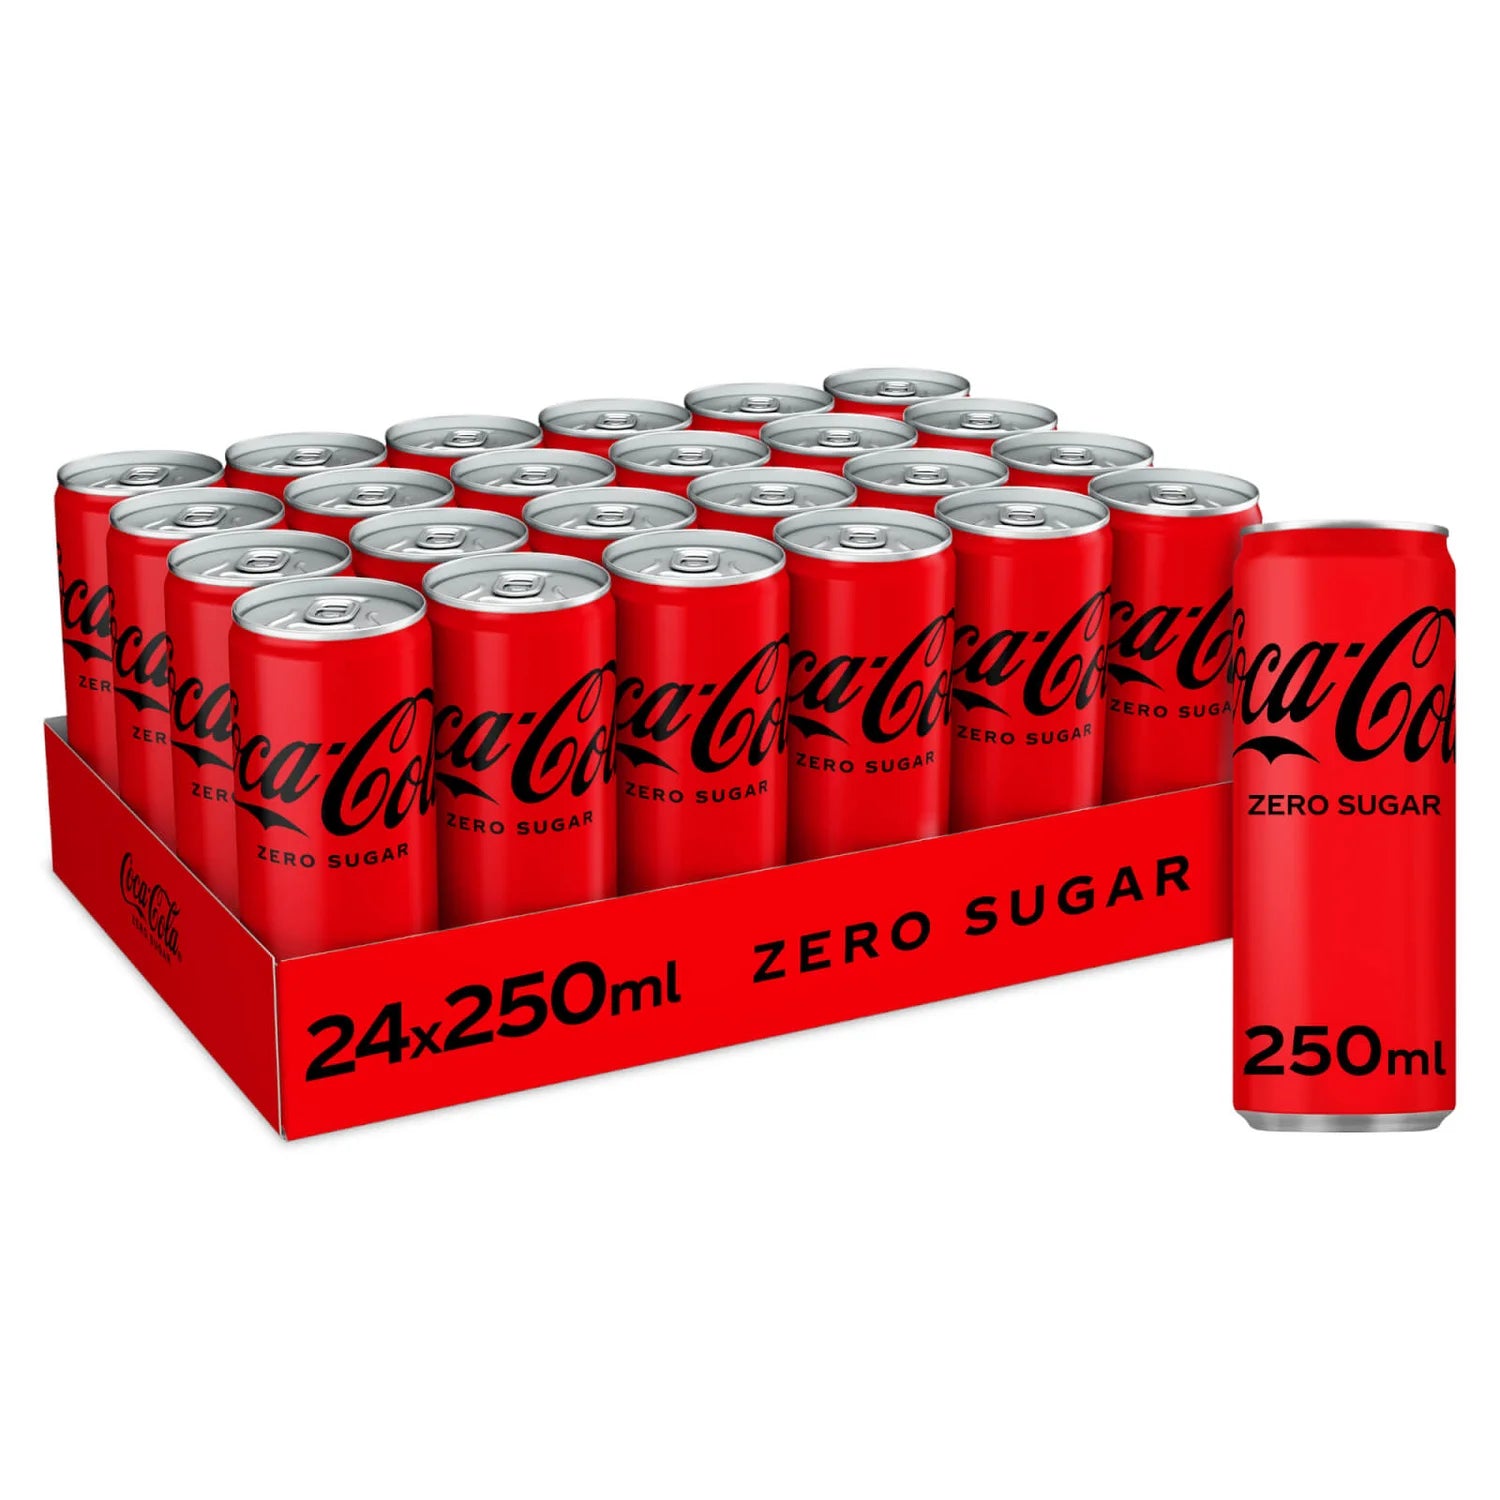 Coca-Cola Zero Sugar - 250ml - case of 24